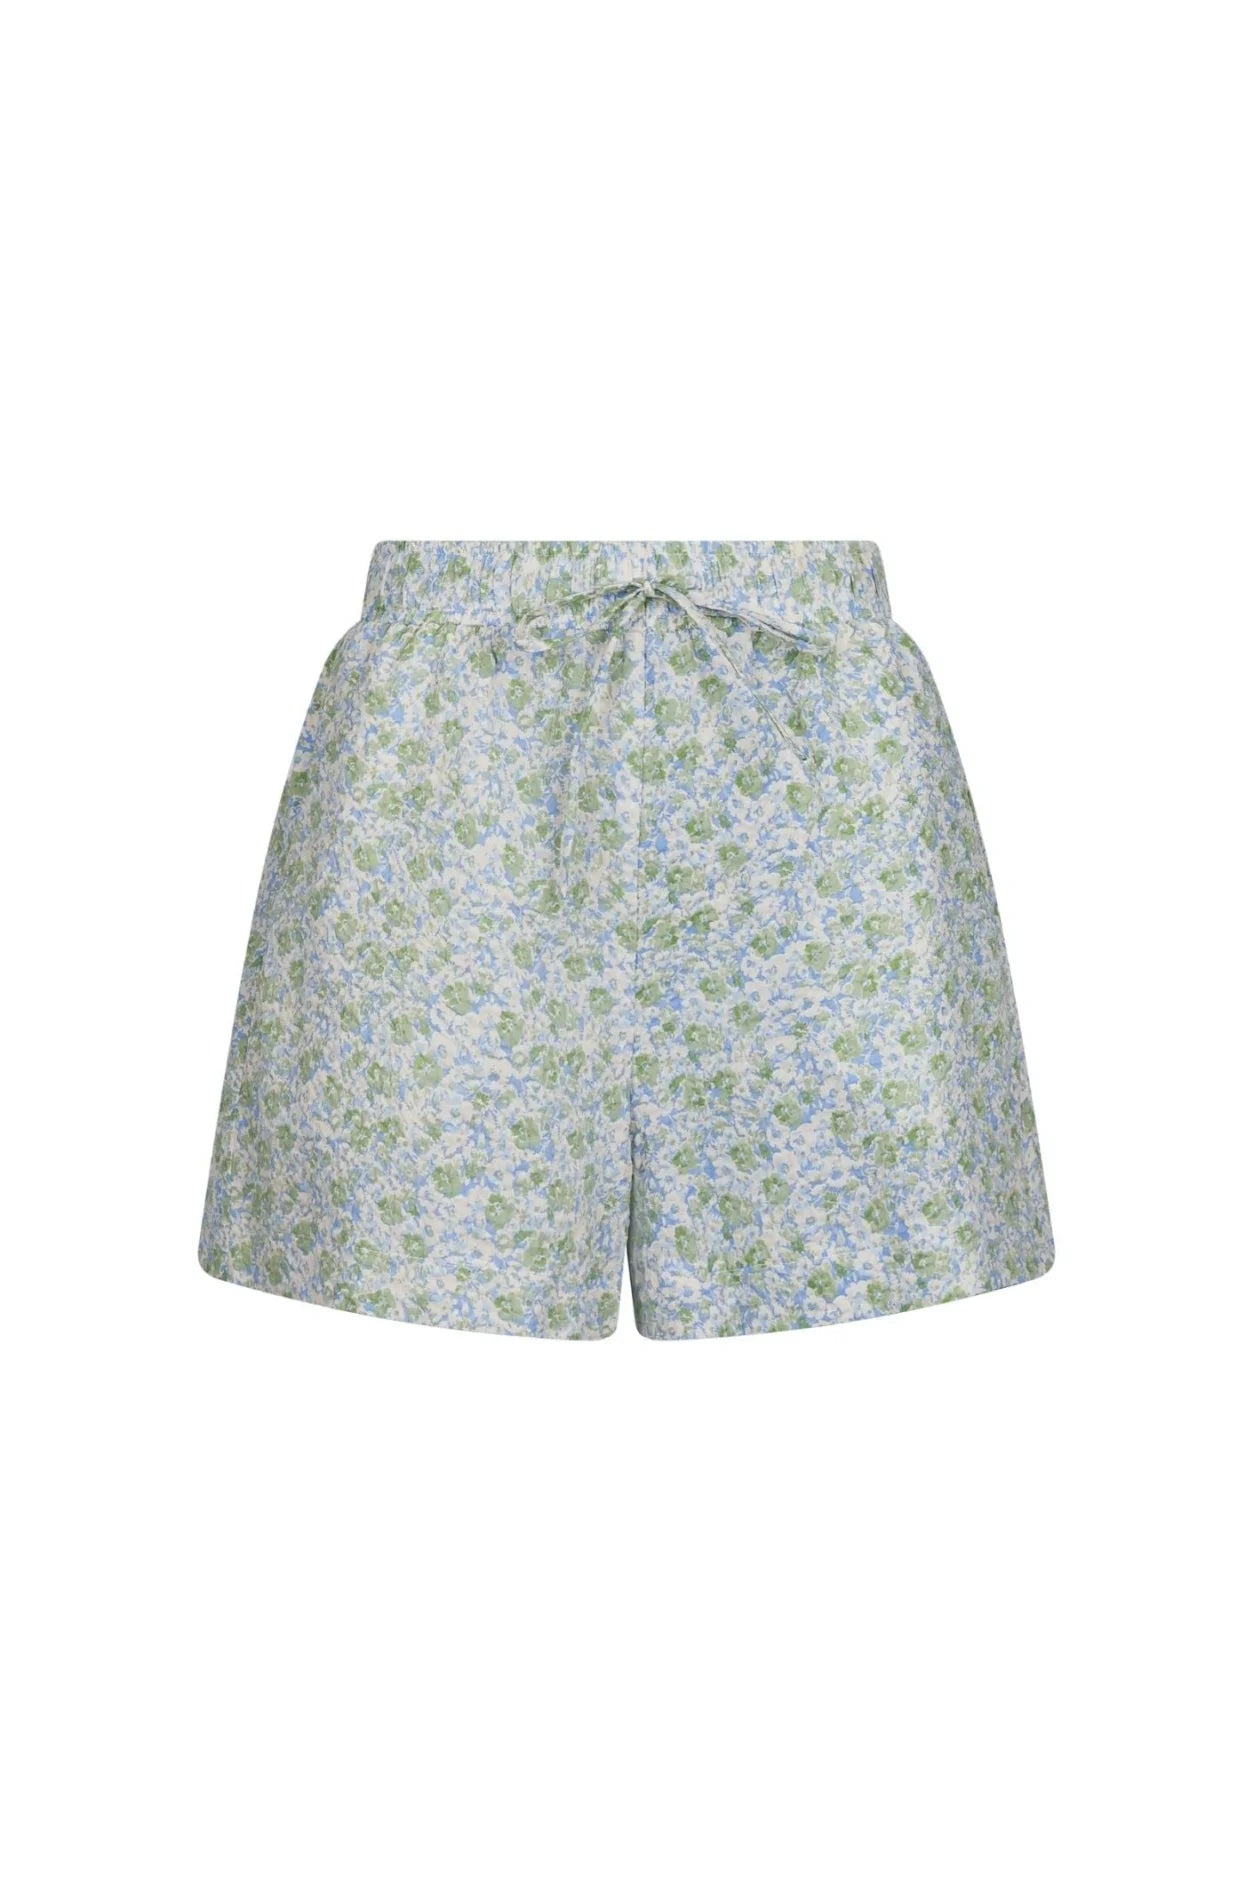 Abbigail Ocean Breeze Shorts